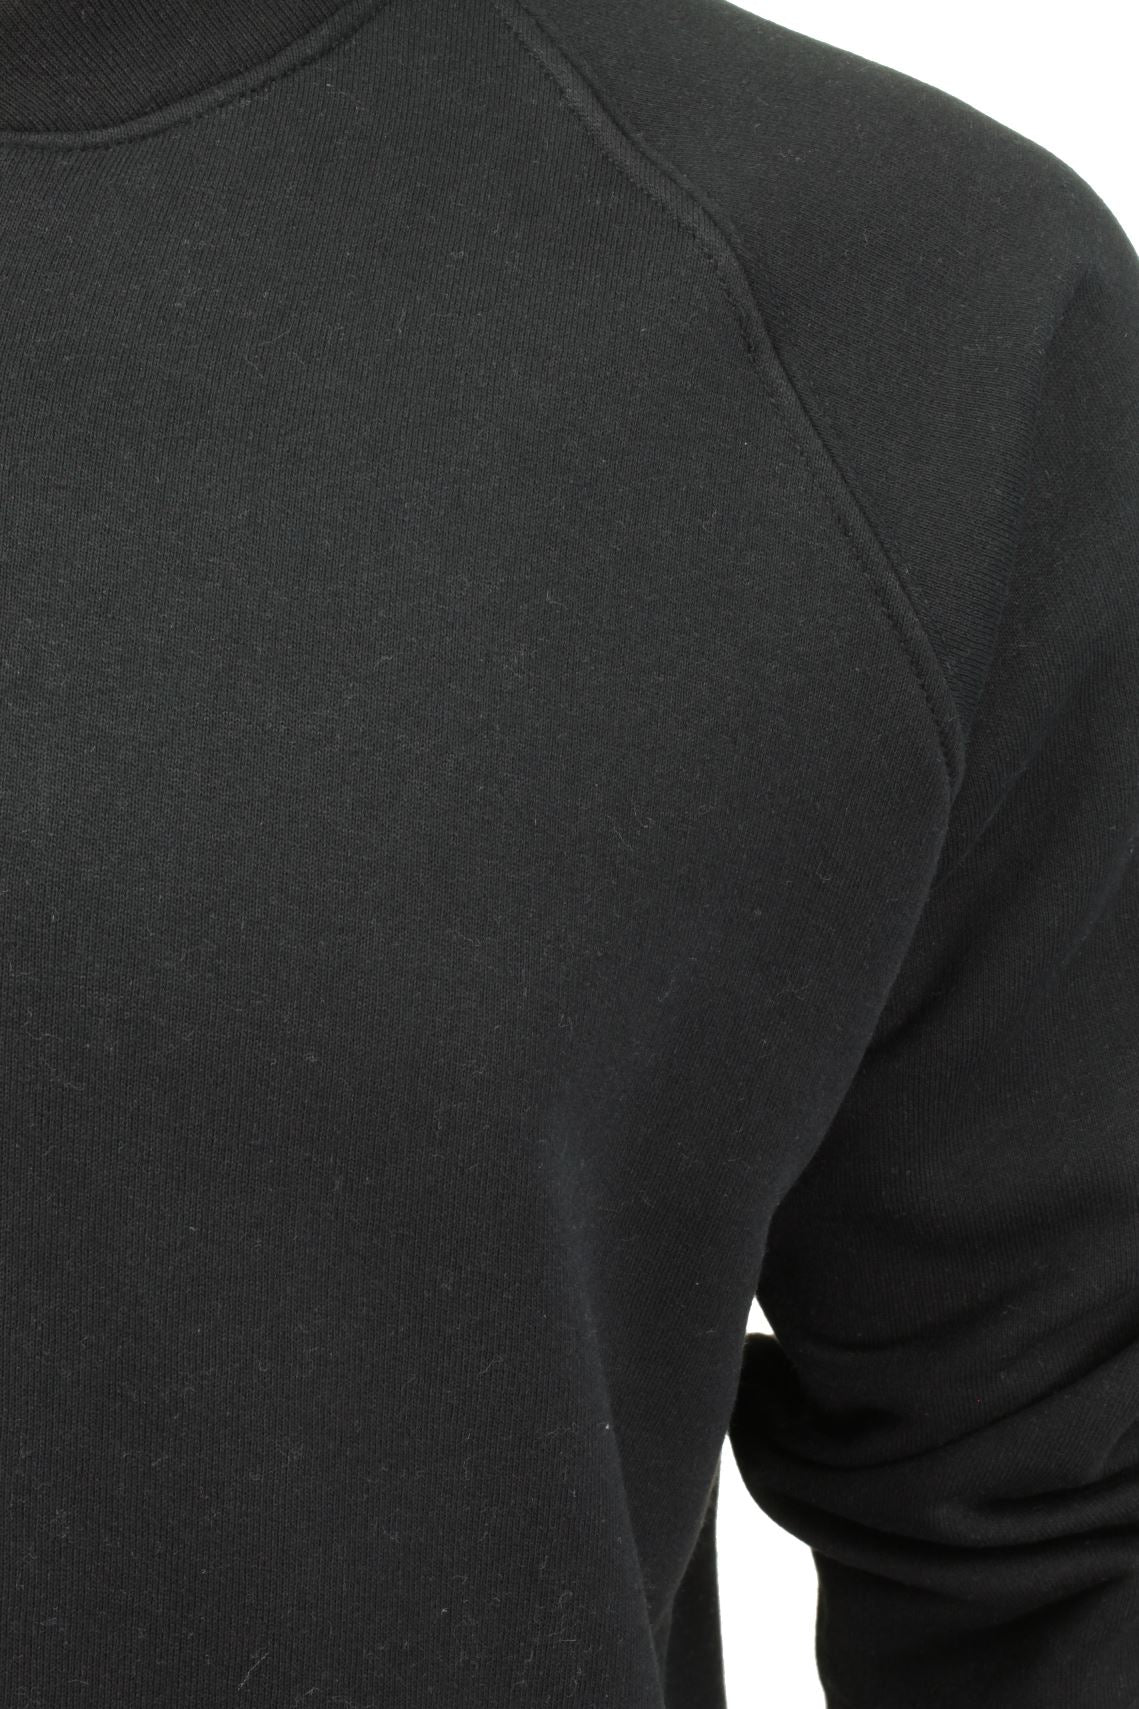 Mens Zip Through Sweatshirt Jumper by Xact Long Sleeved (Black)-2